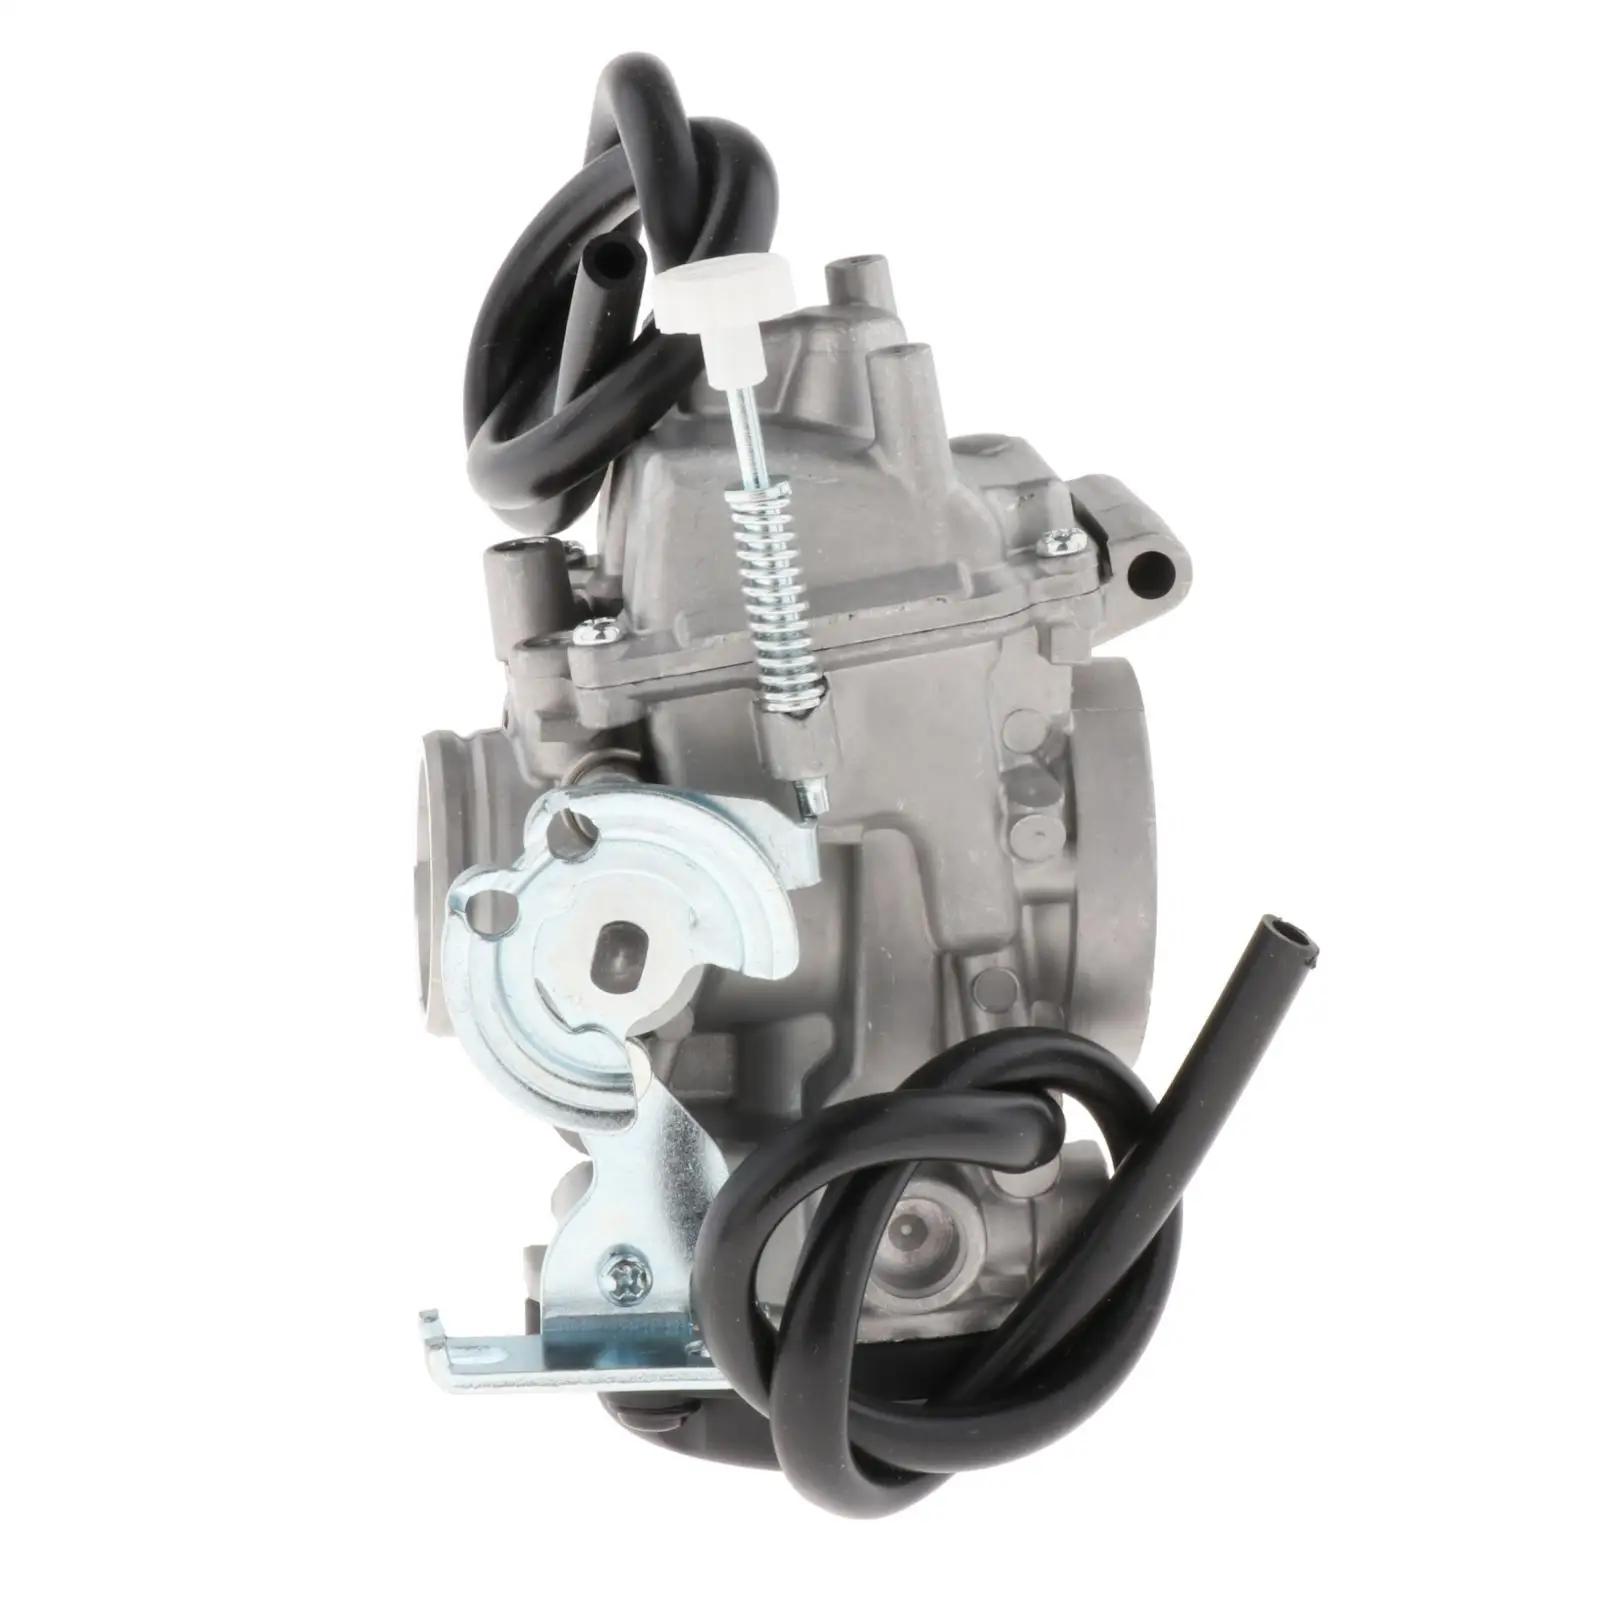 1x Carburetor Dr-Z250 Replacement  for 13200-13E41 13200-13E40 ATV 